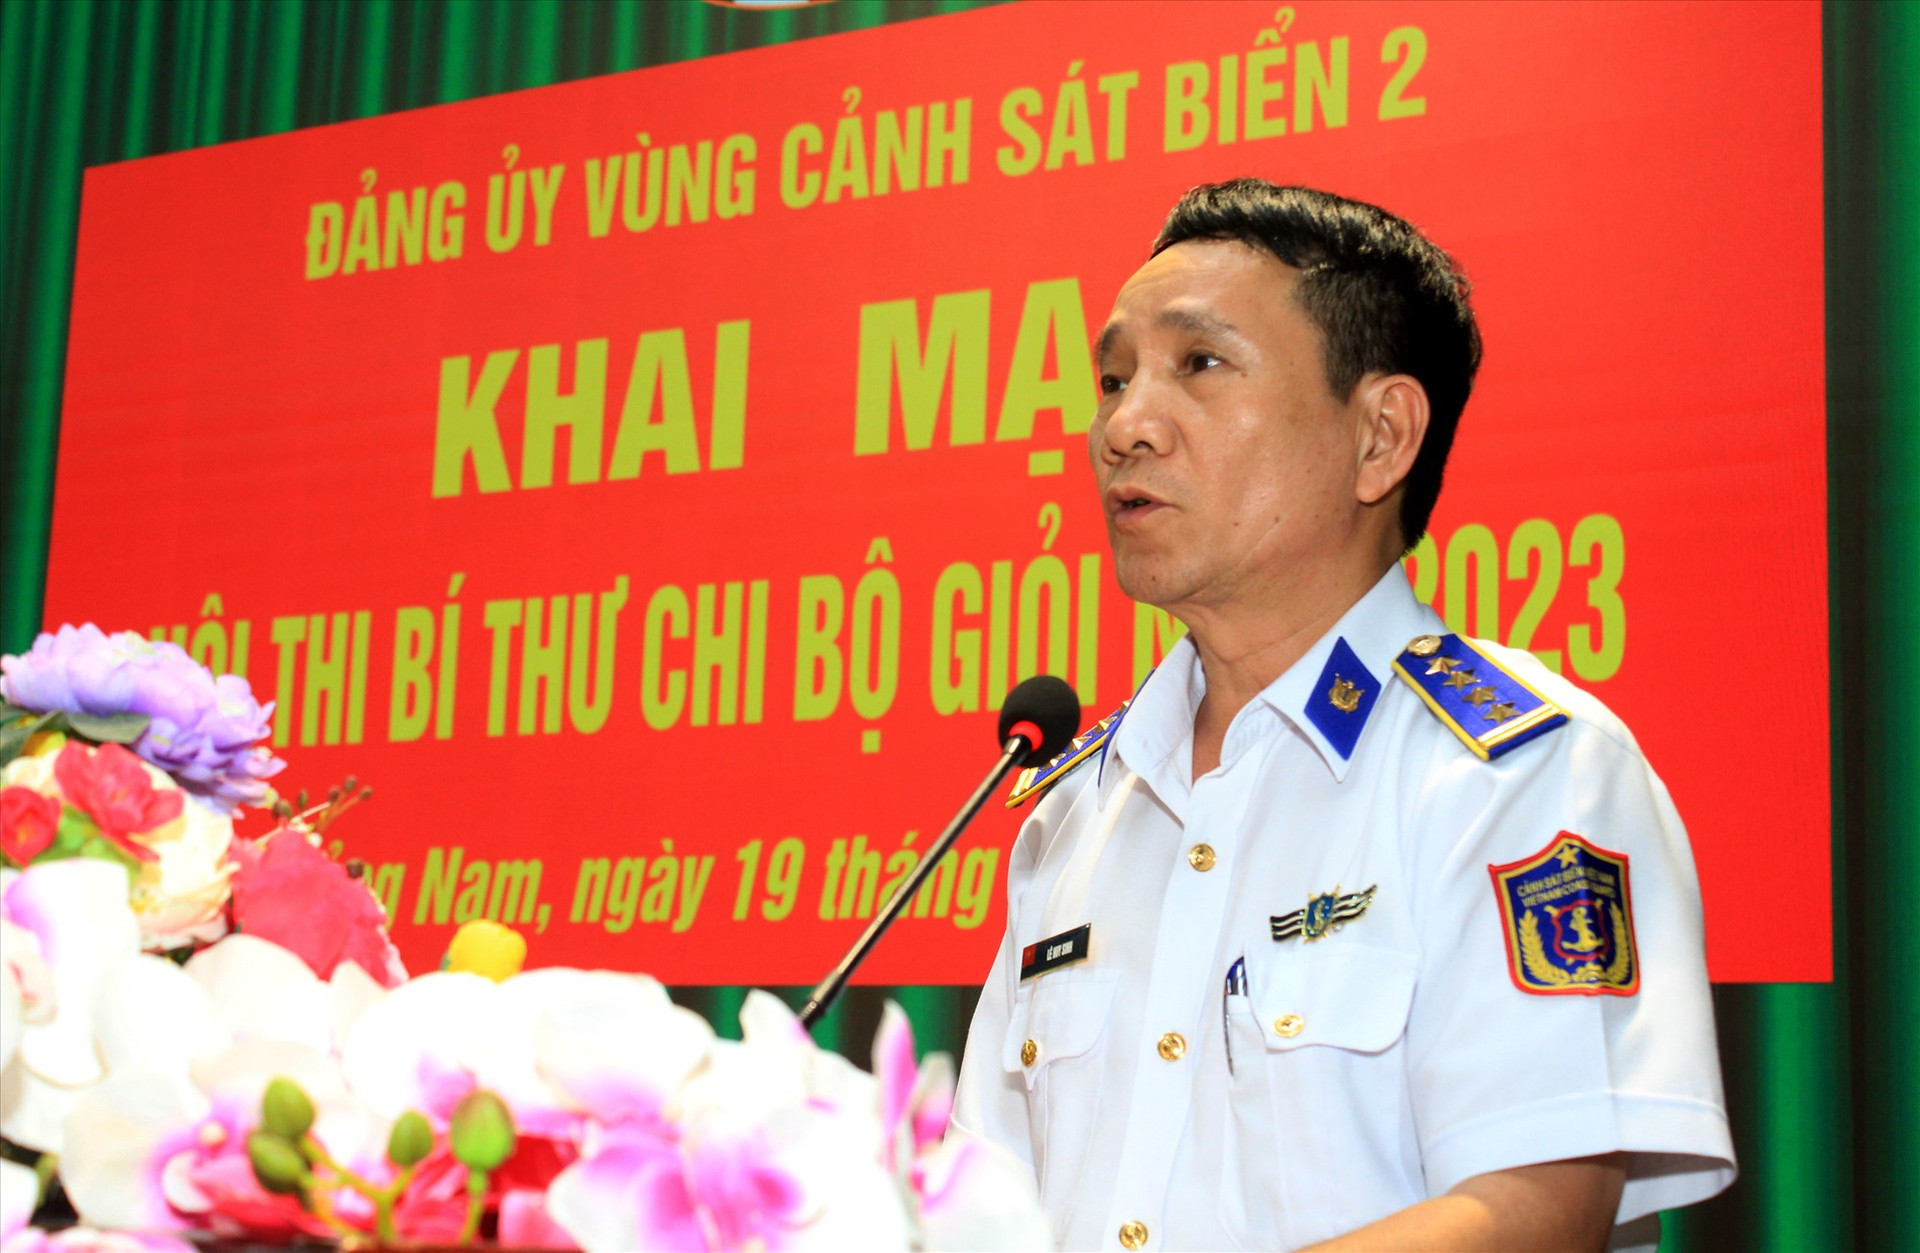 Đại tá Lê Huy Sinh - Chính ủy Bộ Tư lệnh Vùng Cảnh sát biển 2 phát biểu khai mạc hội thi. Ảnh: T.C